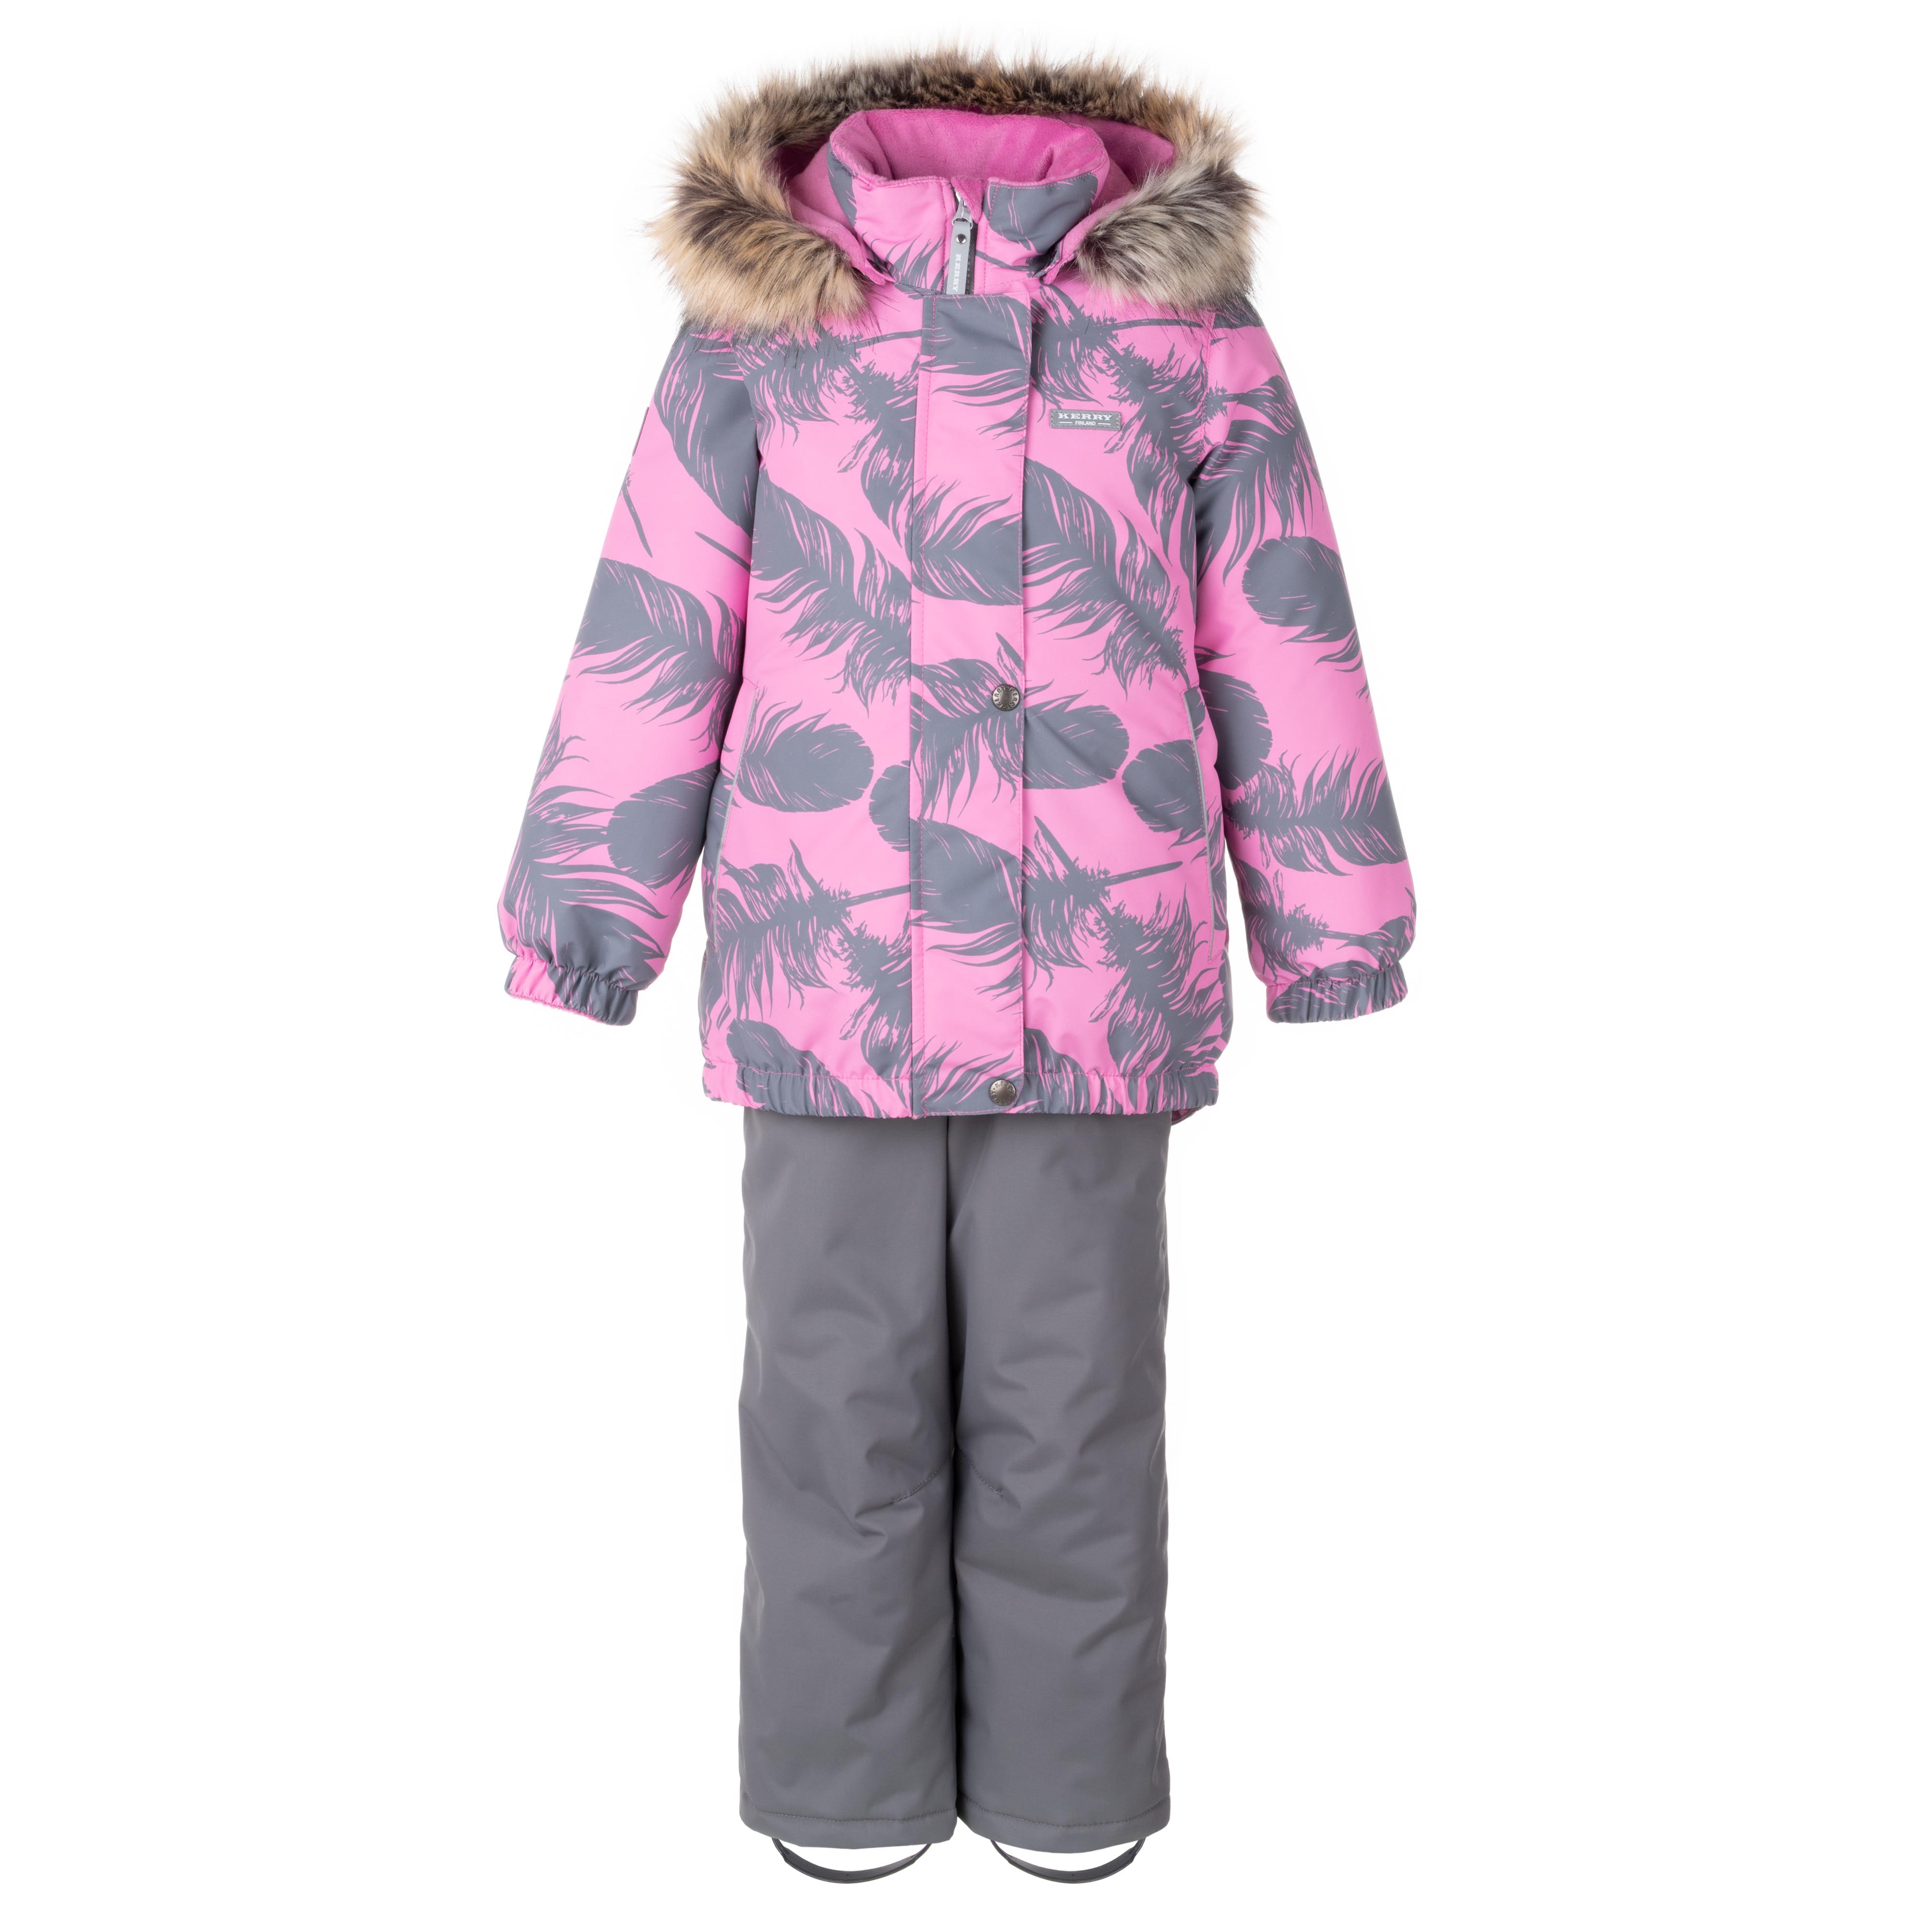 Комплект верхней одежды KERRY K23420 A, серый, розовый, 110 комплект верхней одежды oldos aoaw23su2t116 розовый  134